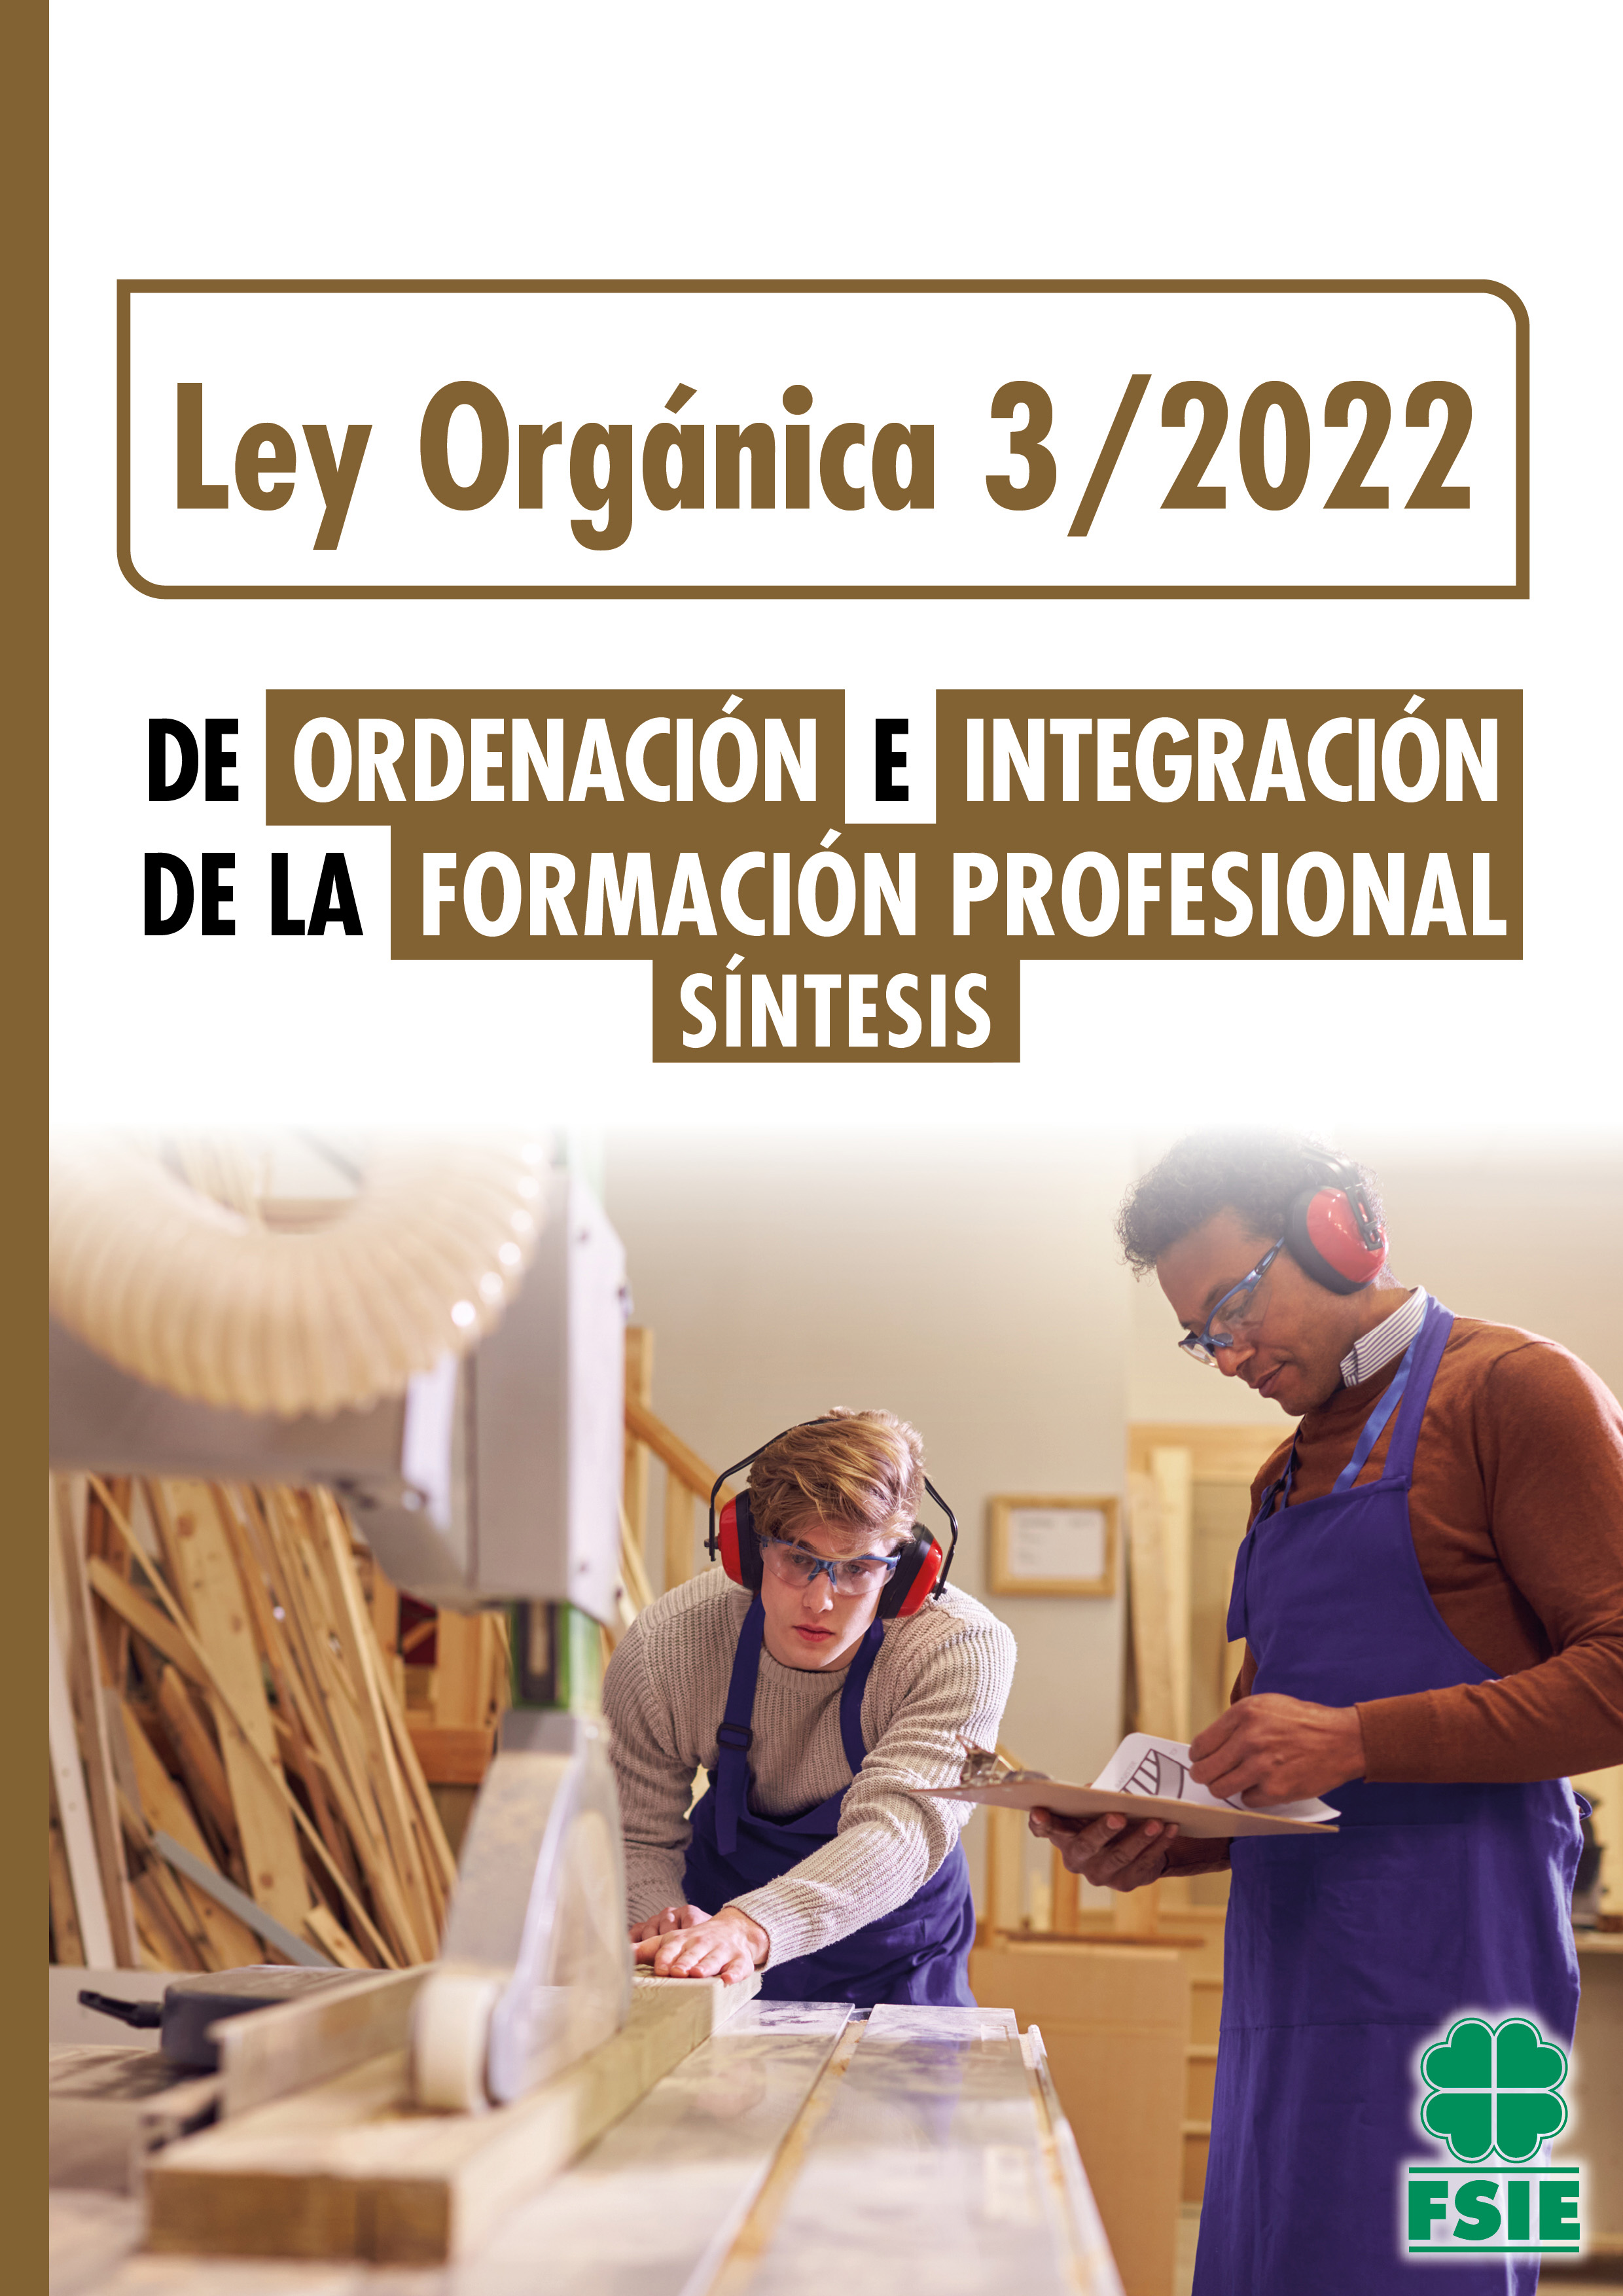 Ley Orgánica 3 / 2022